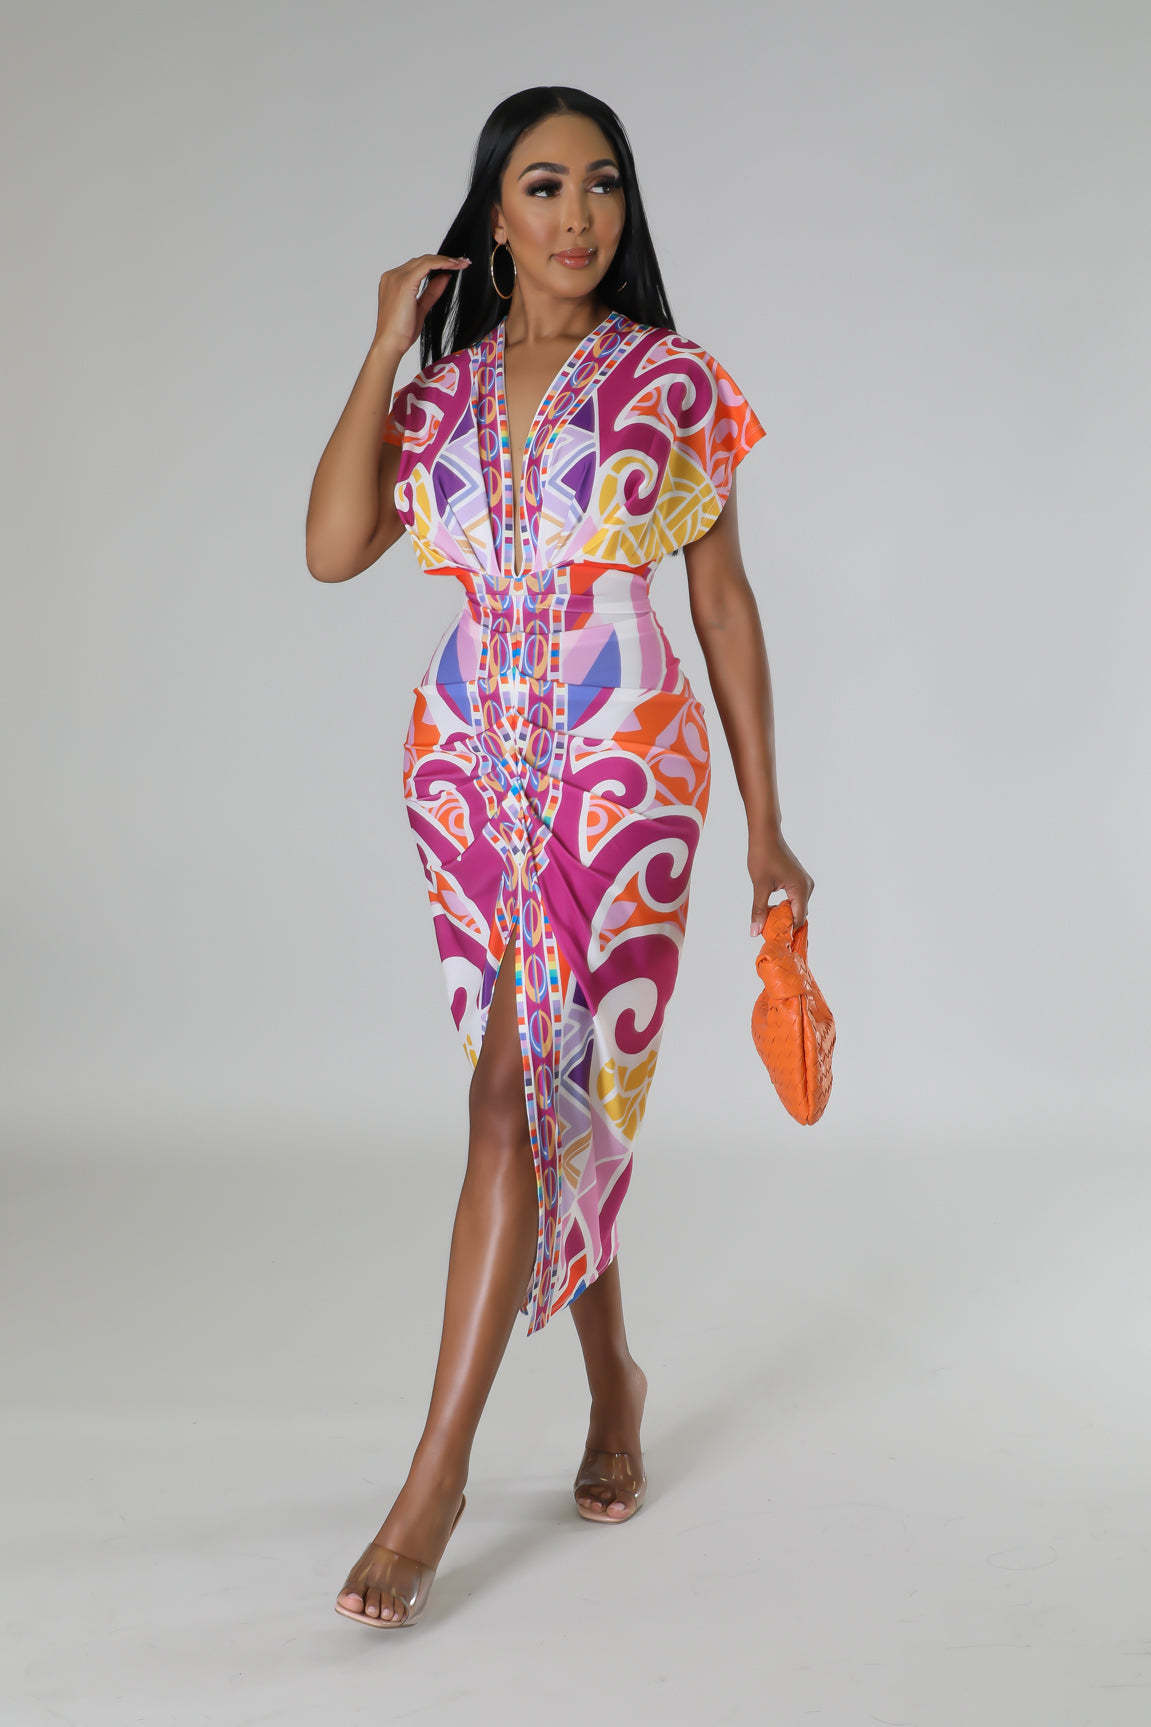 BamBam Printed women's v-neck Tight Fitting skirt dress ethnic style slit positioning pleated dress - BamBam